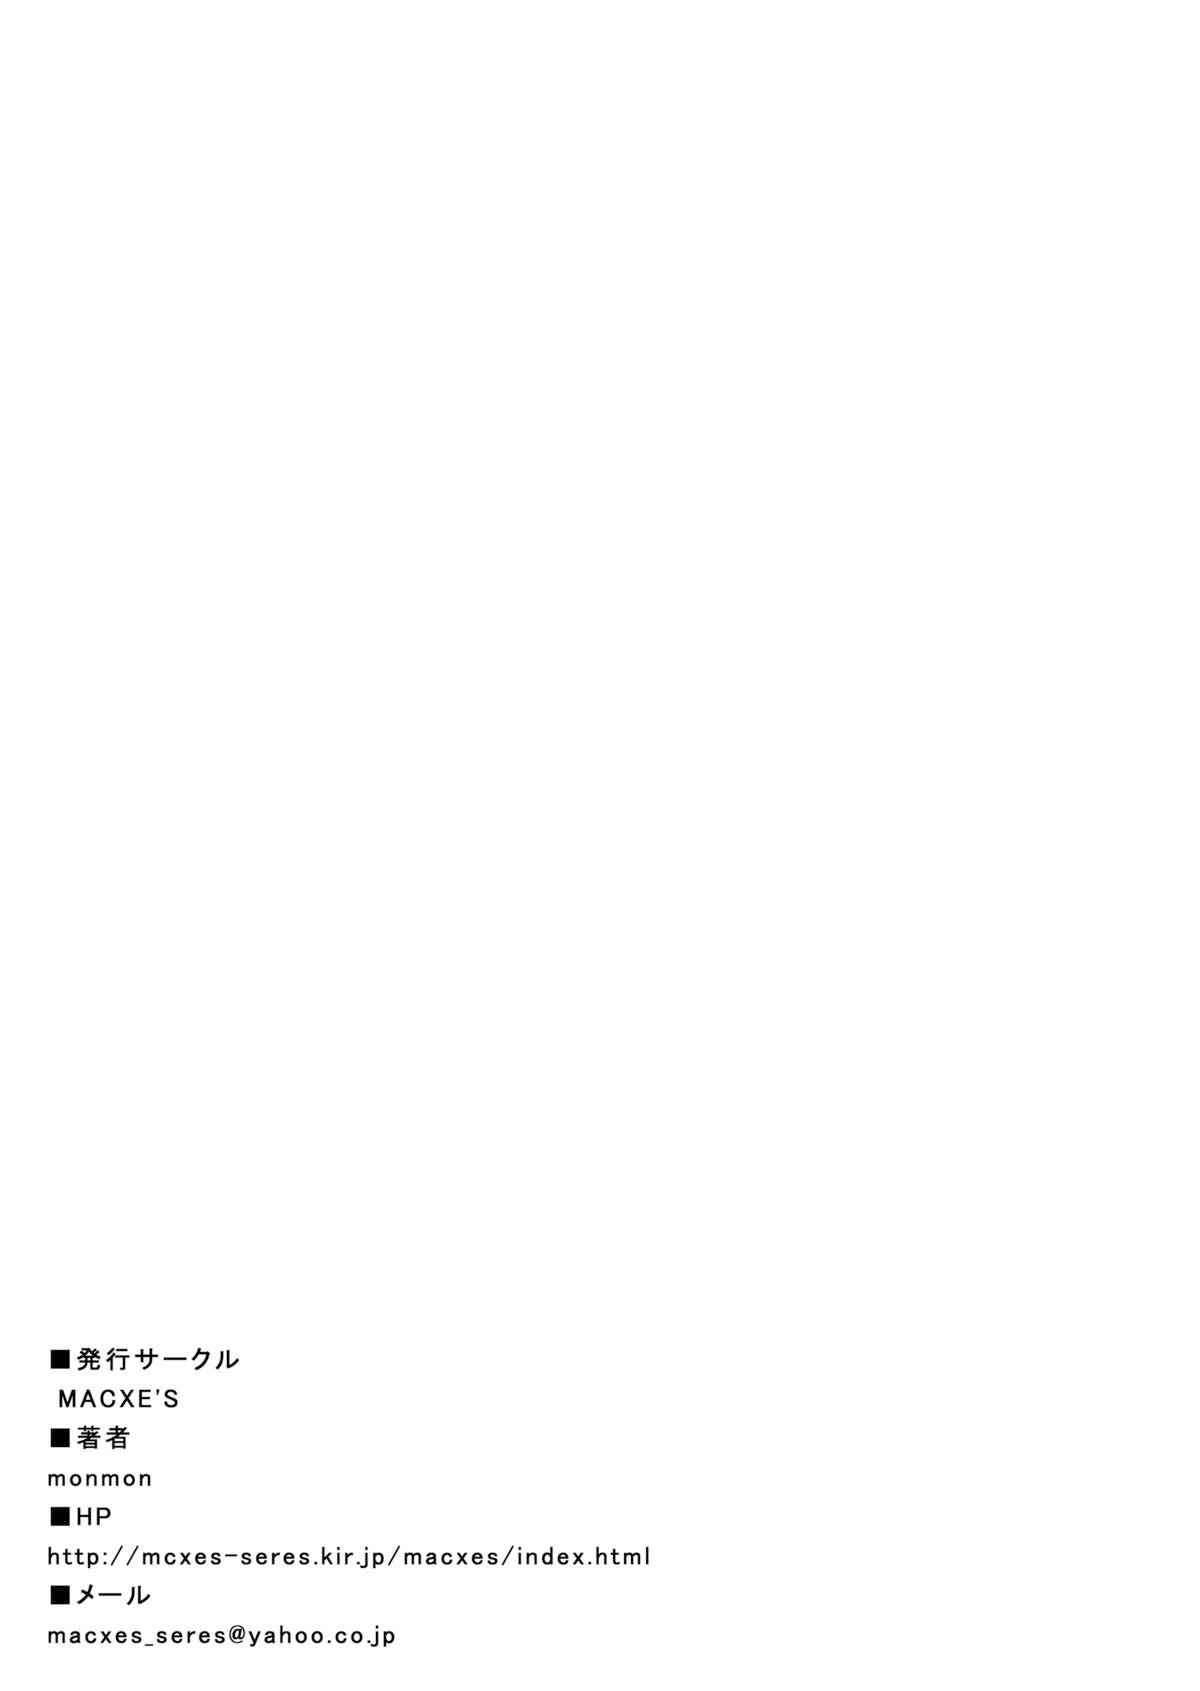 Rubbing [MACXE'S (monmon)] Mou Hitotsu no Ketsumatsu ~Henshin Heroine Kairaku Sennou Yes!! Precure 5 Hen~ 另一个结局 变身女英雄快乐洗脑 yes!! 光之美少女5篇 第三话 (Yes! PreCure 5) [Chinese] [LLQ个人汉化] - Yes precure 5 3some - Page 35